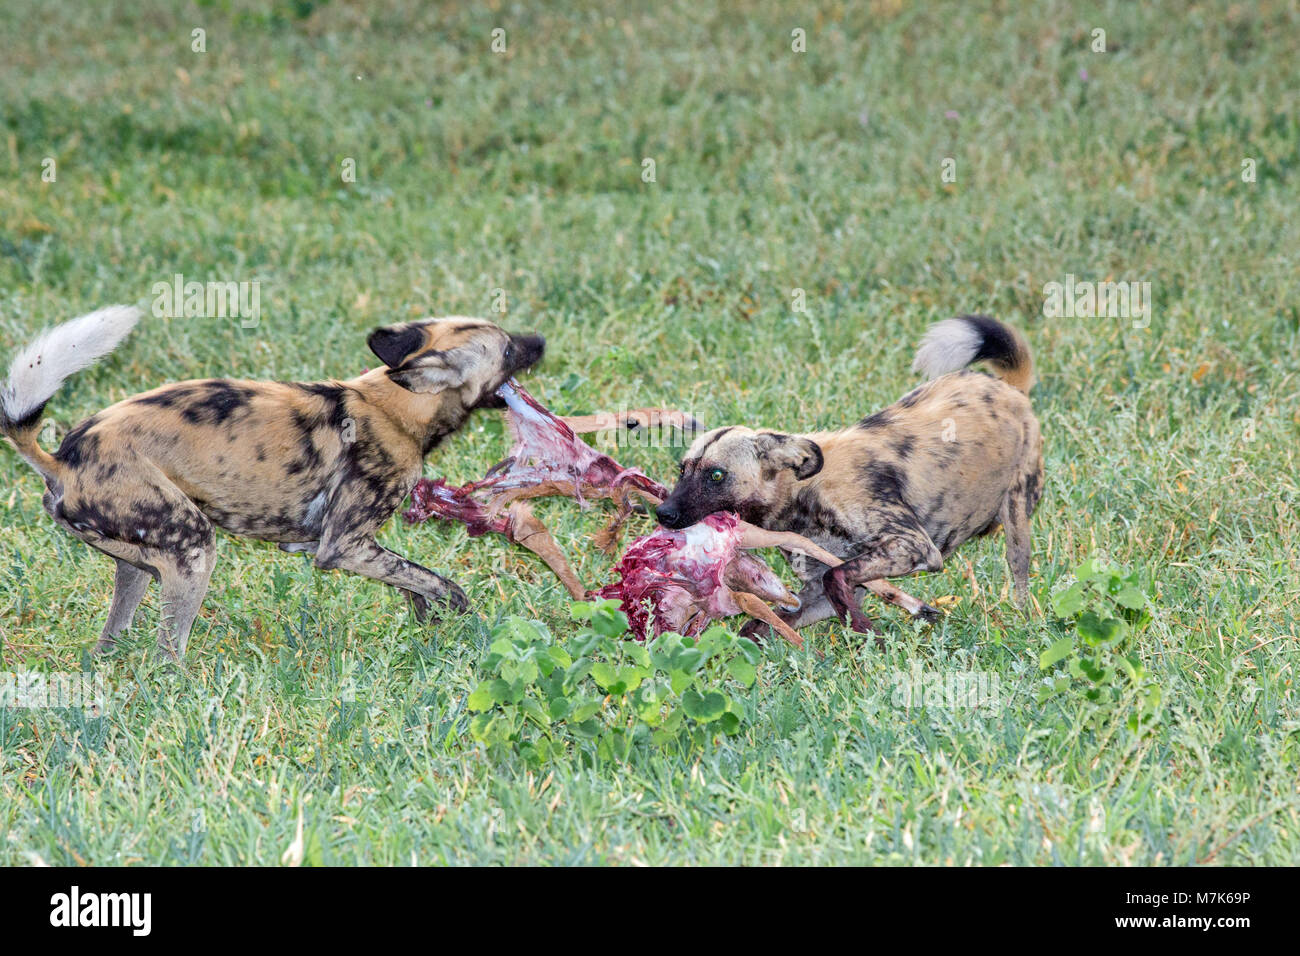 Wilde Afrikanische Wildhunde (Lycaon pictus). Zwei Pack Mitglieder auseinander reißen gerade getötet Impala (Aepyceros melampus). Geschwister Wettbewerb für die Wahl teilen. Stockfoto